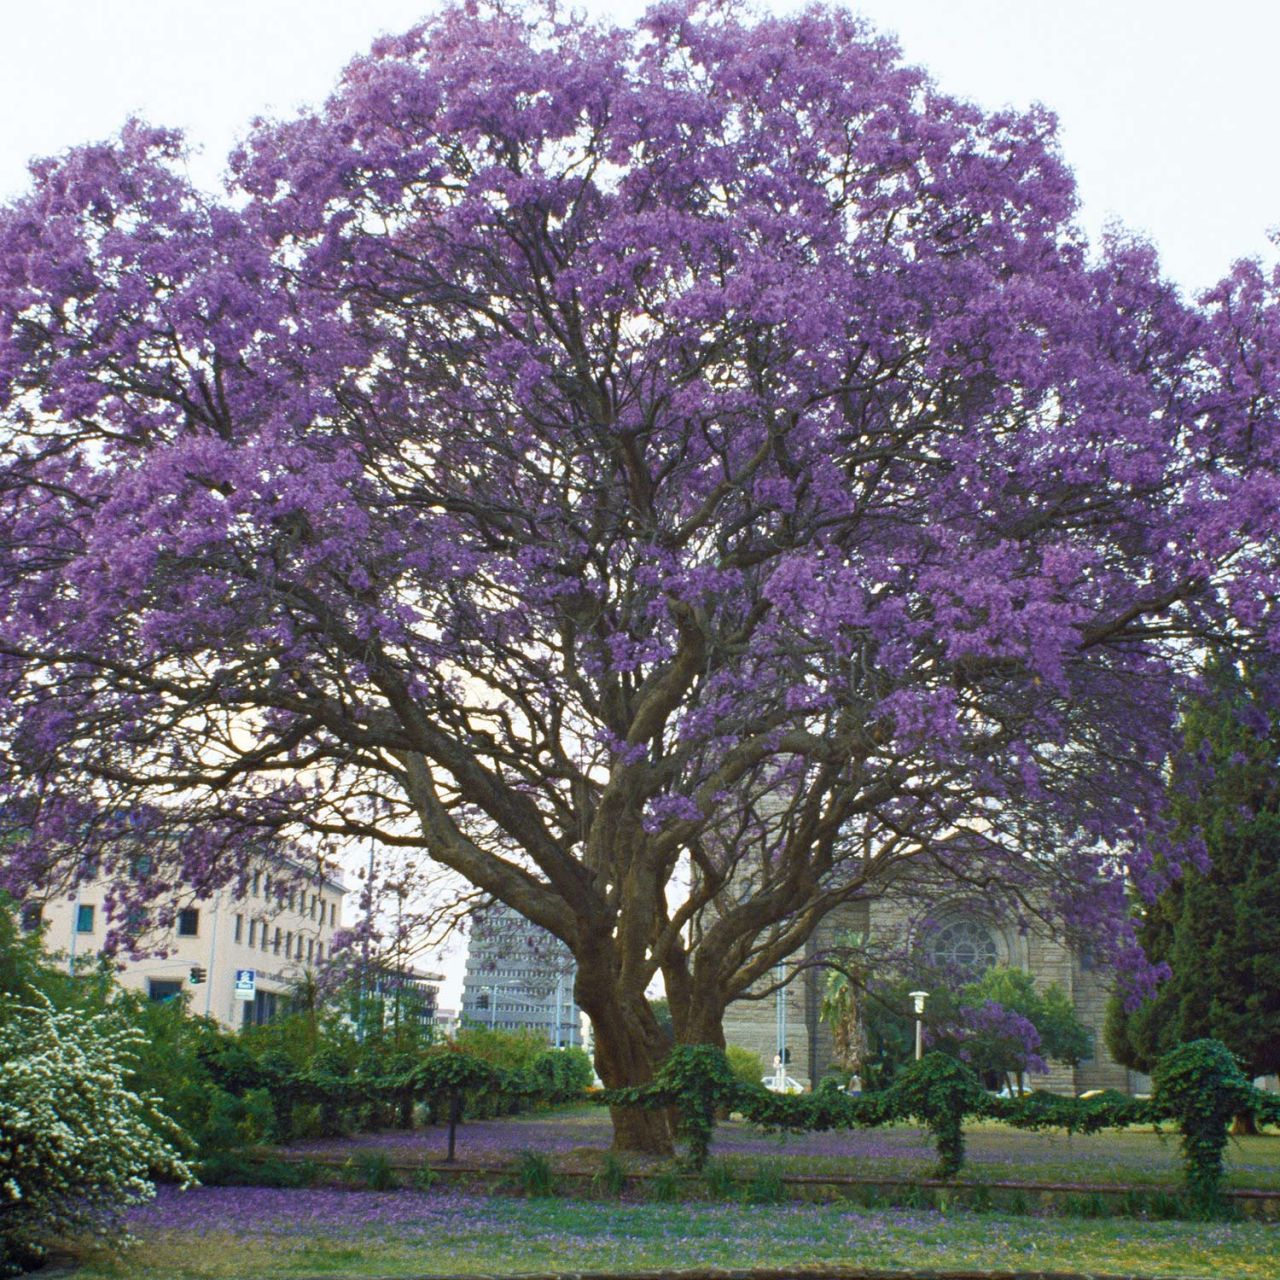  Klimawandelbaum - Blauglockenbaum - Paulownia tomentosa